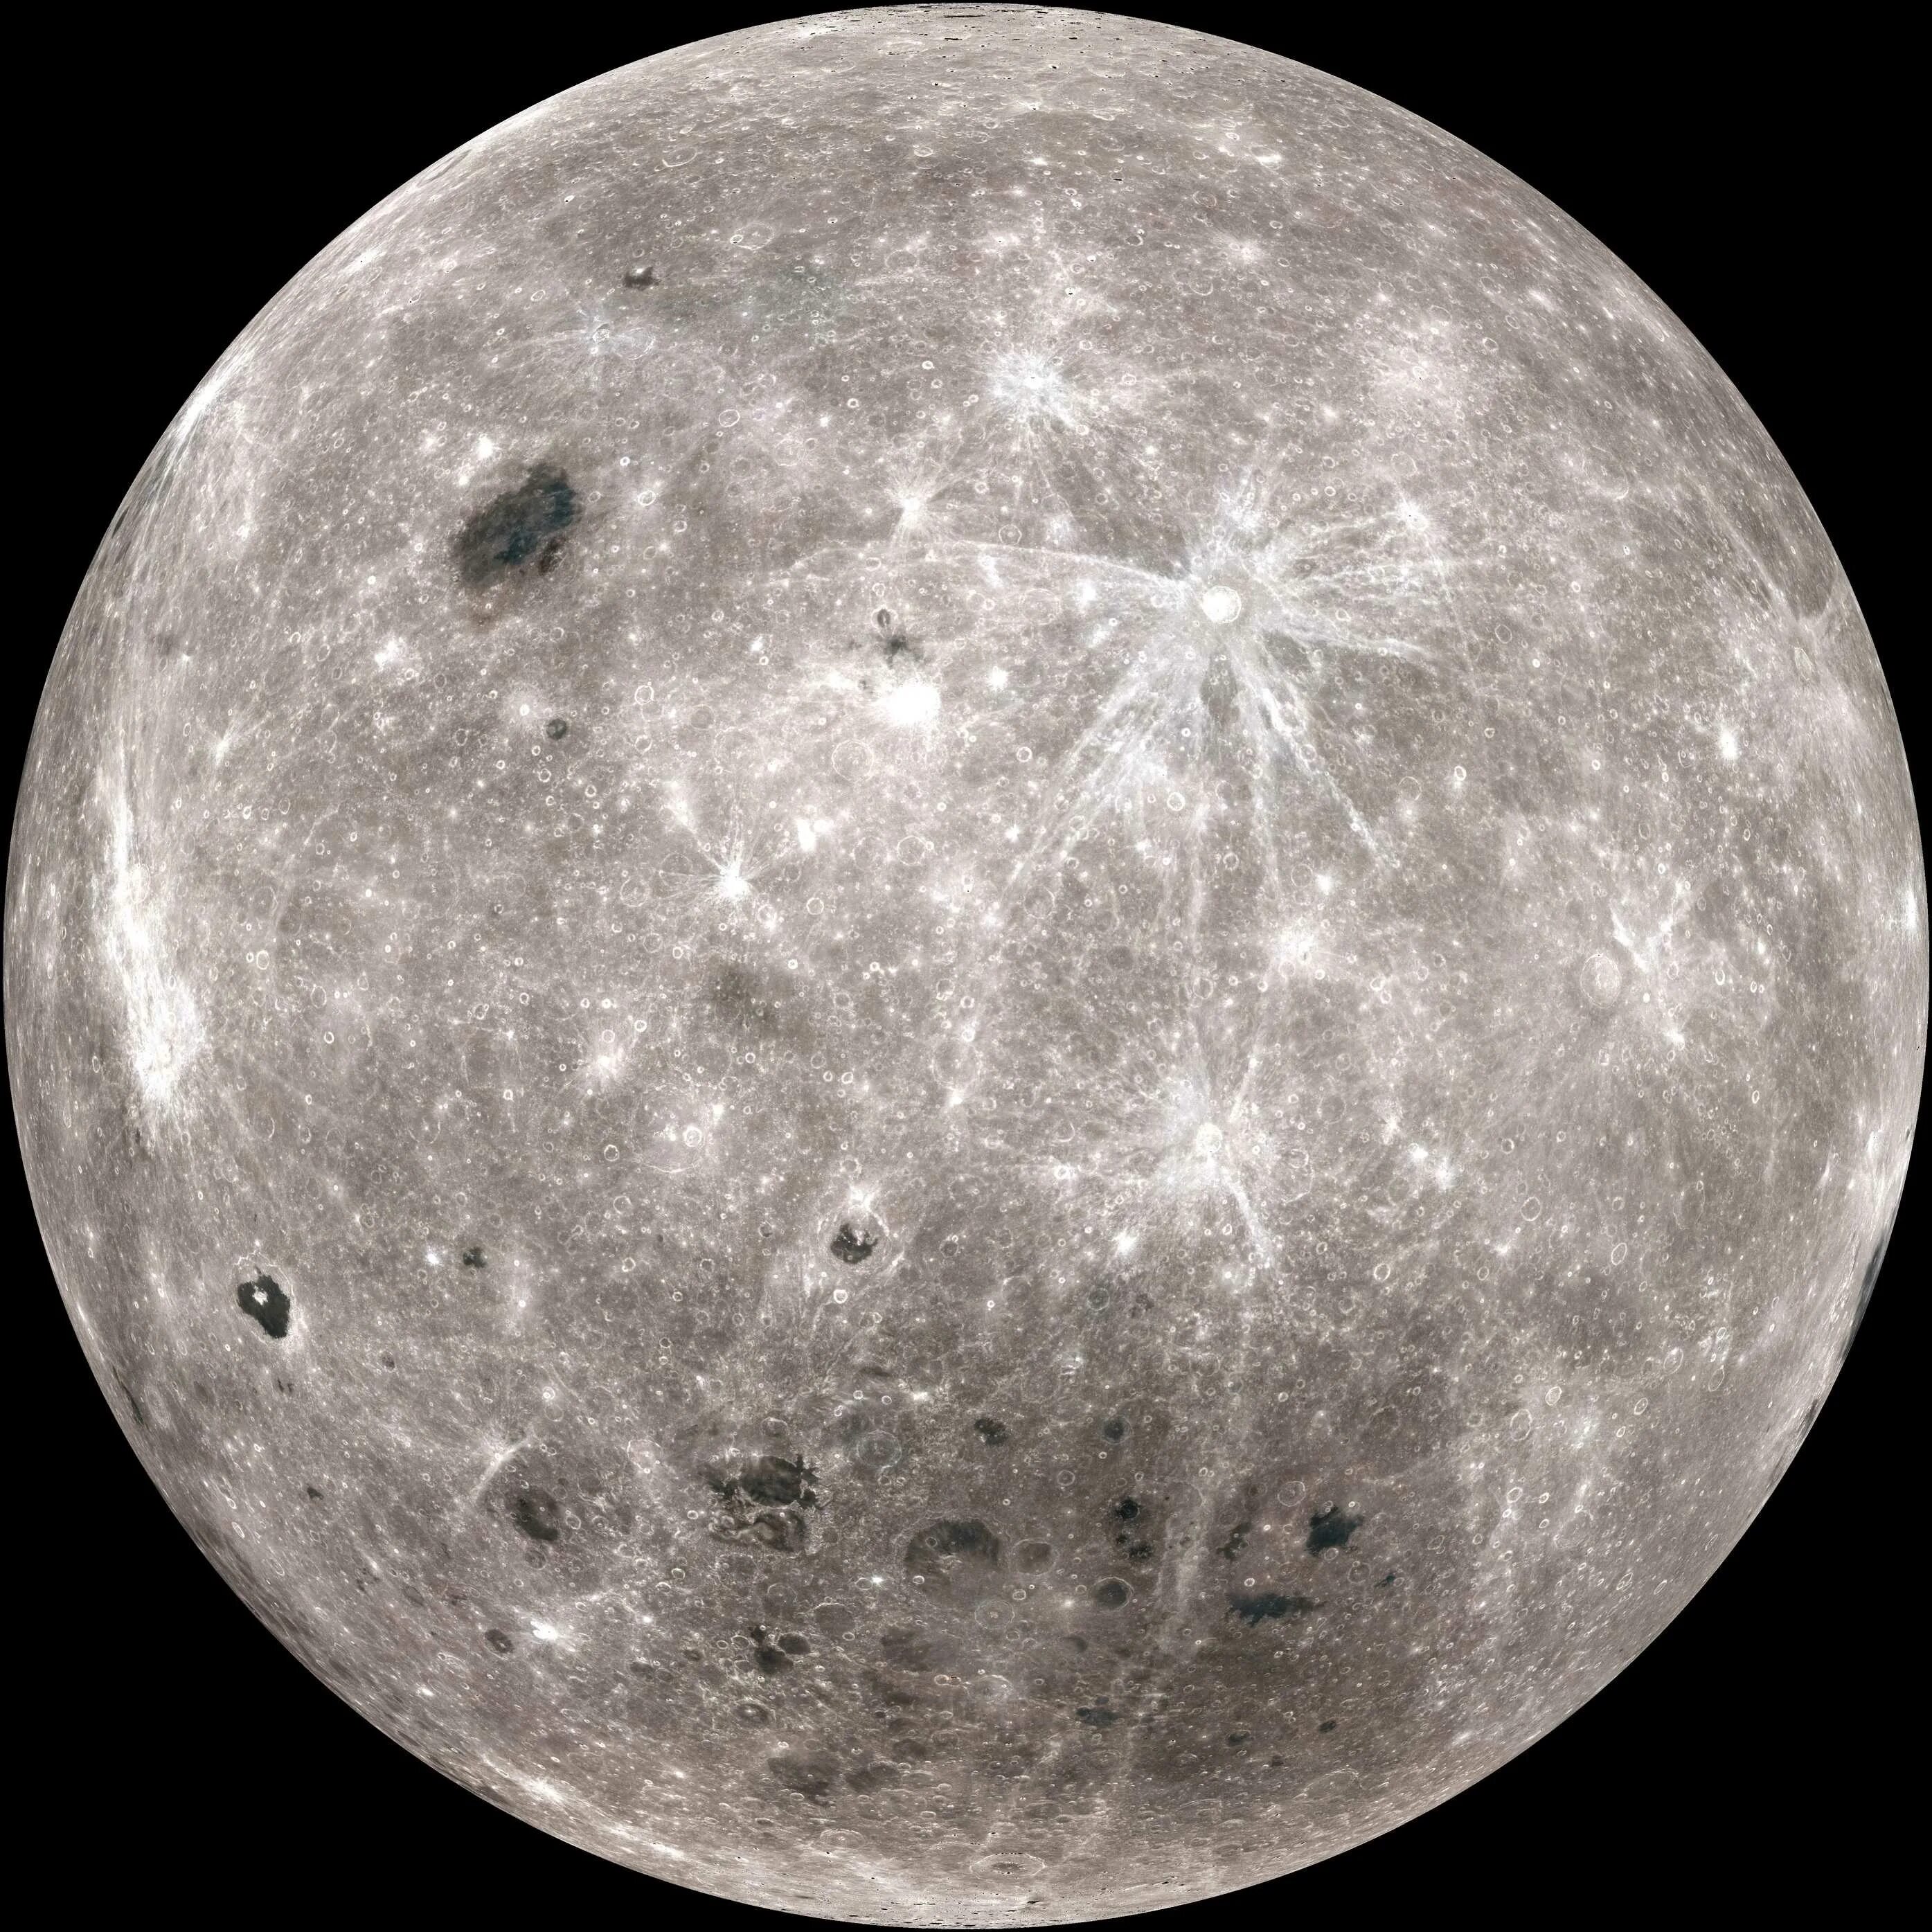 Видео обратной стороны луны. Бассейн Южный полюс - Эйткен. Снимки НАСА обратной стороны Луны. Меркурий и Луна. Обратная сторона Луны снимок НАСА.